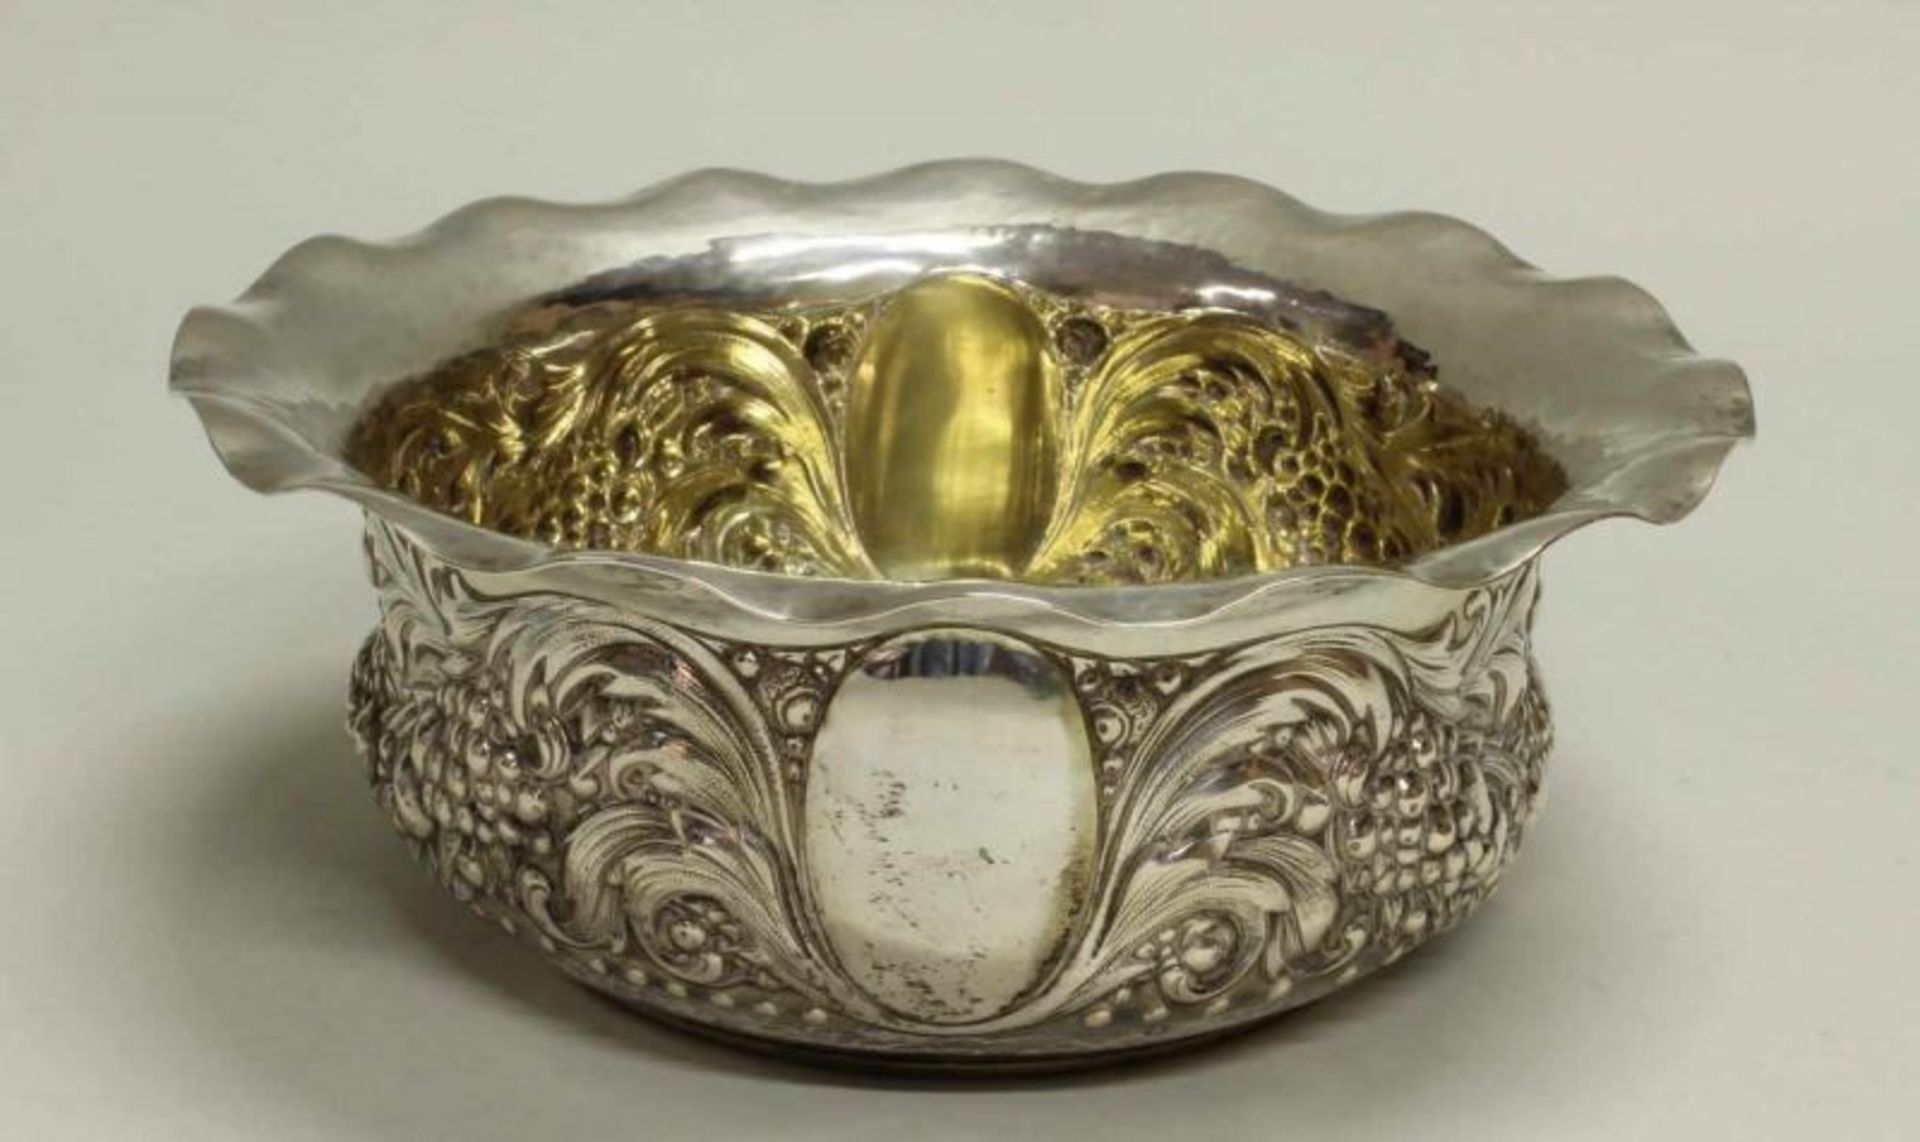 Schale, Silber 800, Bruckmann, innen vergoldet, Reliefdekor mit Fruchtgirlanden, gebuchteter Rand,